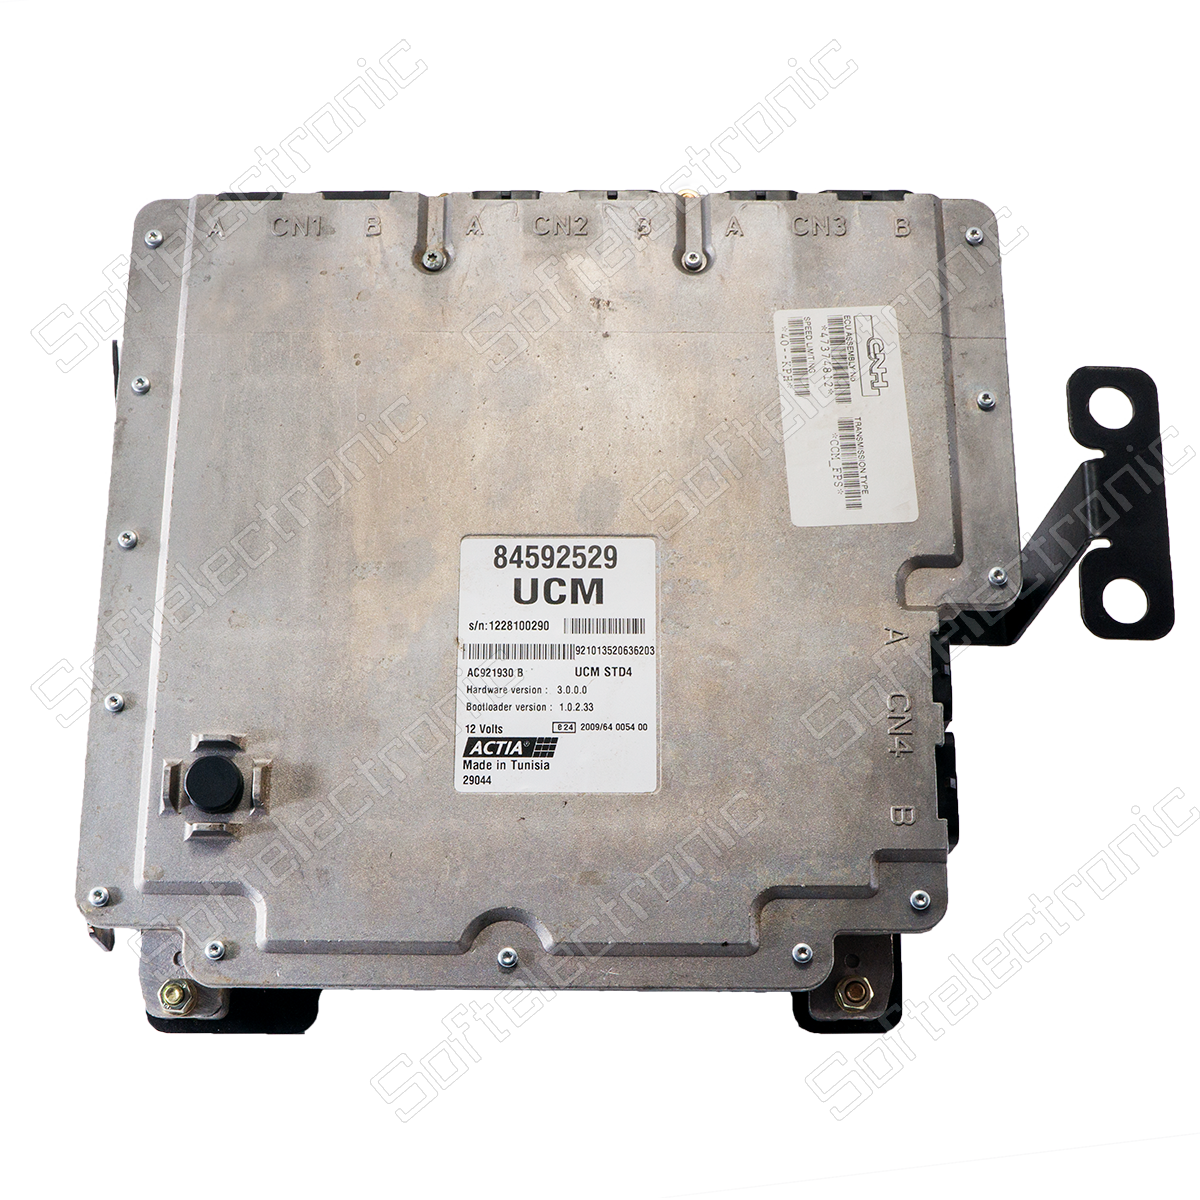 Reparatur Motorsteuergerät UCM STD1 / STD4